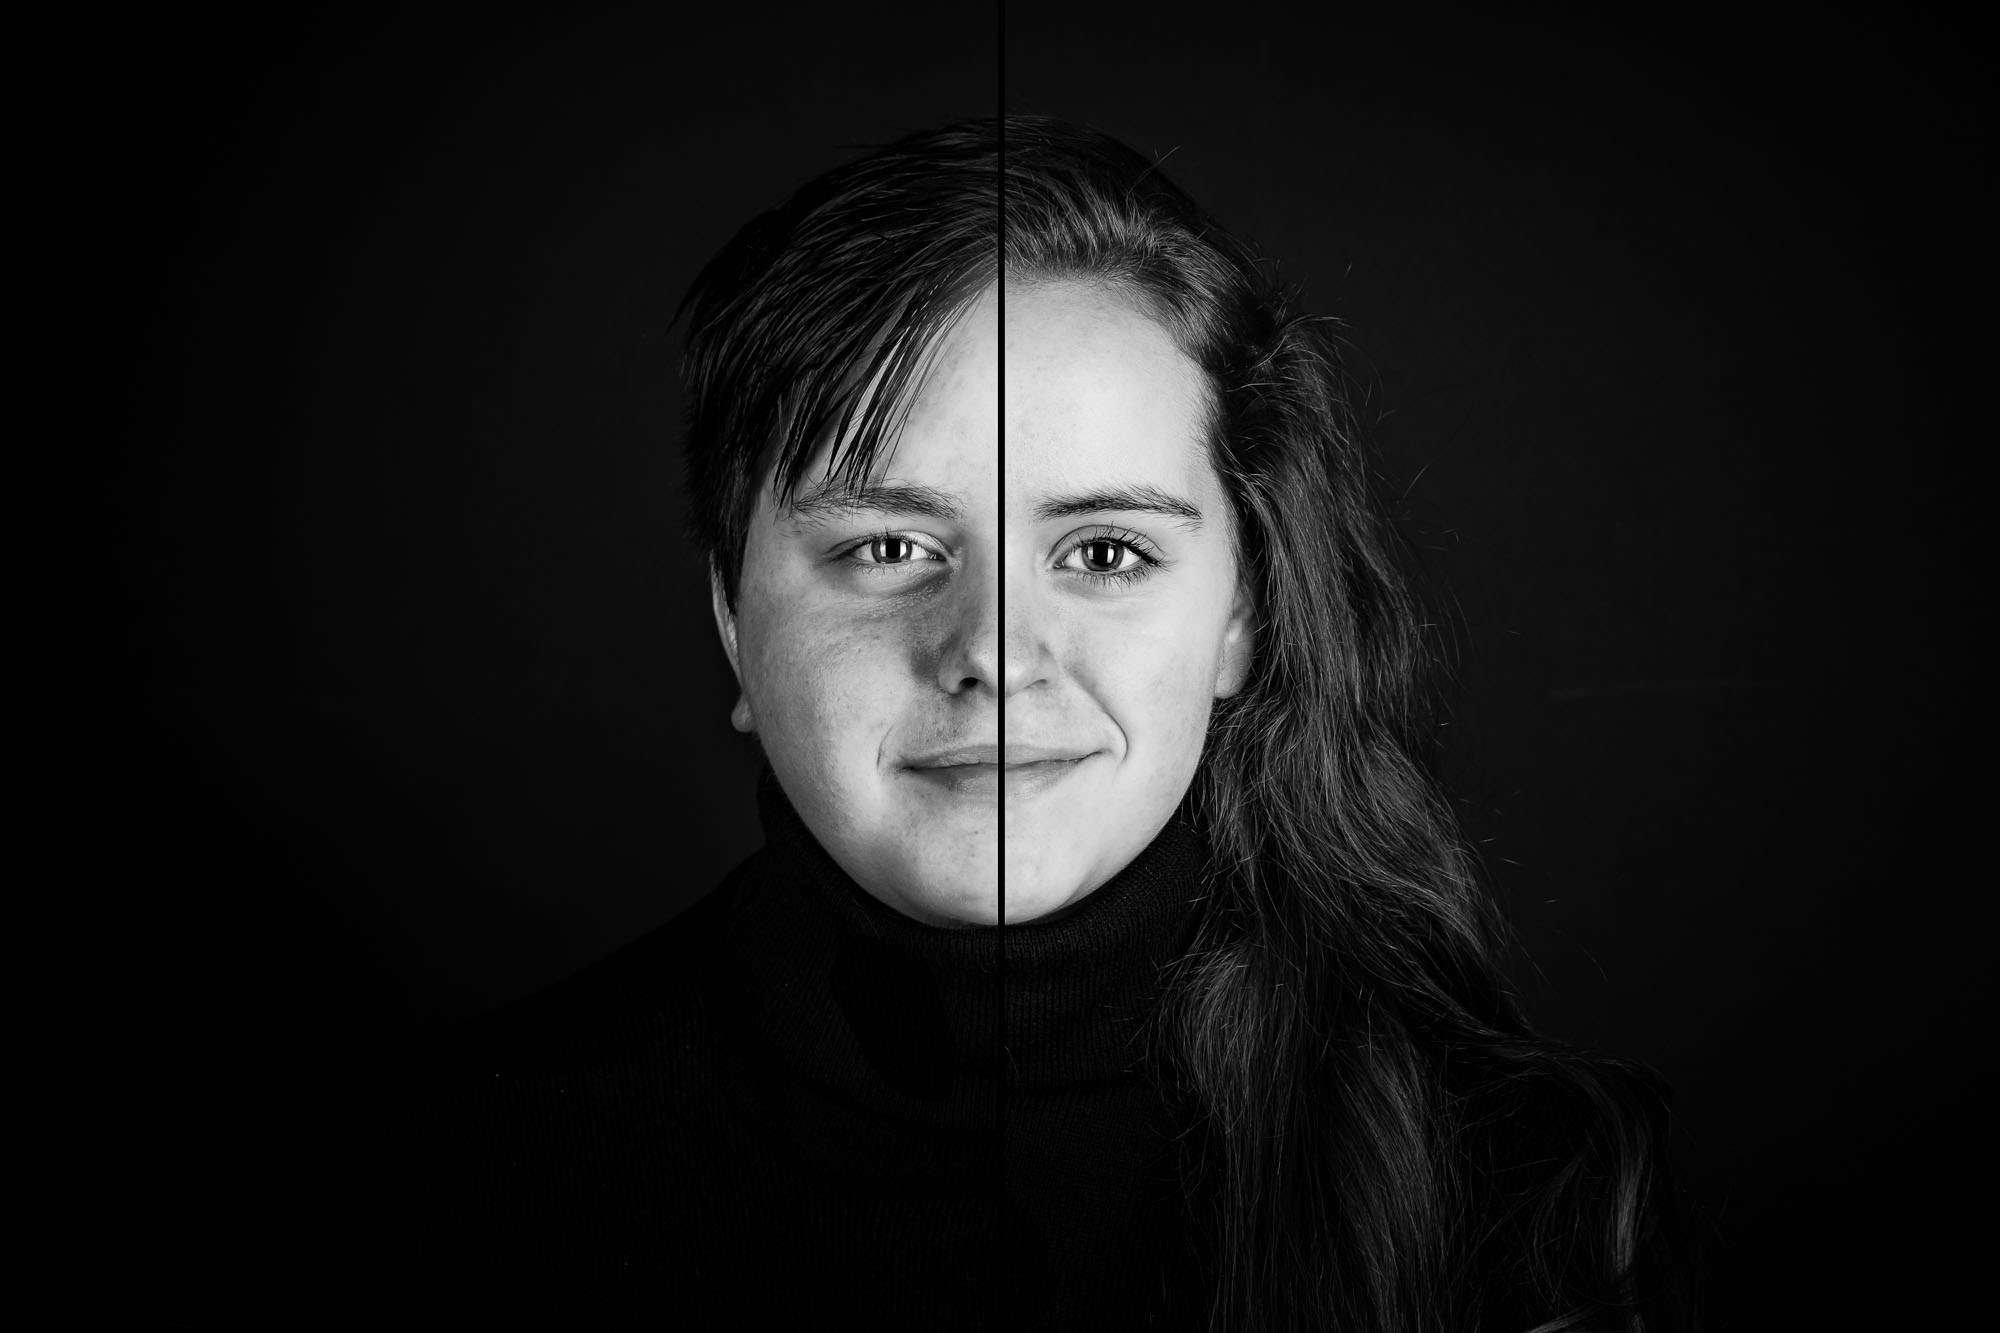 Fusion Portret Fotoshoot 2 in 1 Fusion portret. Twee gezichten verwerkt in één uniek fotokunstwerk